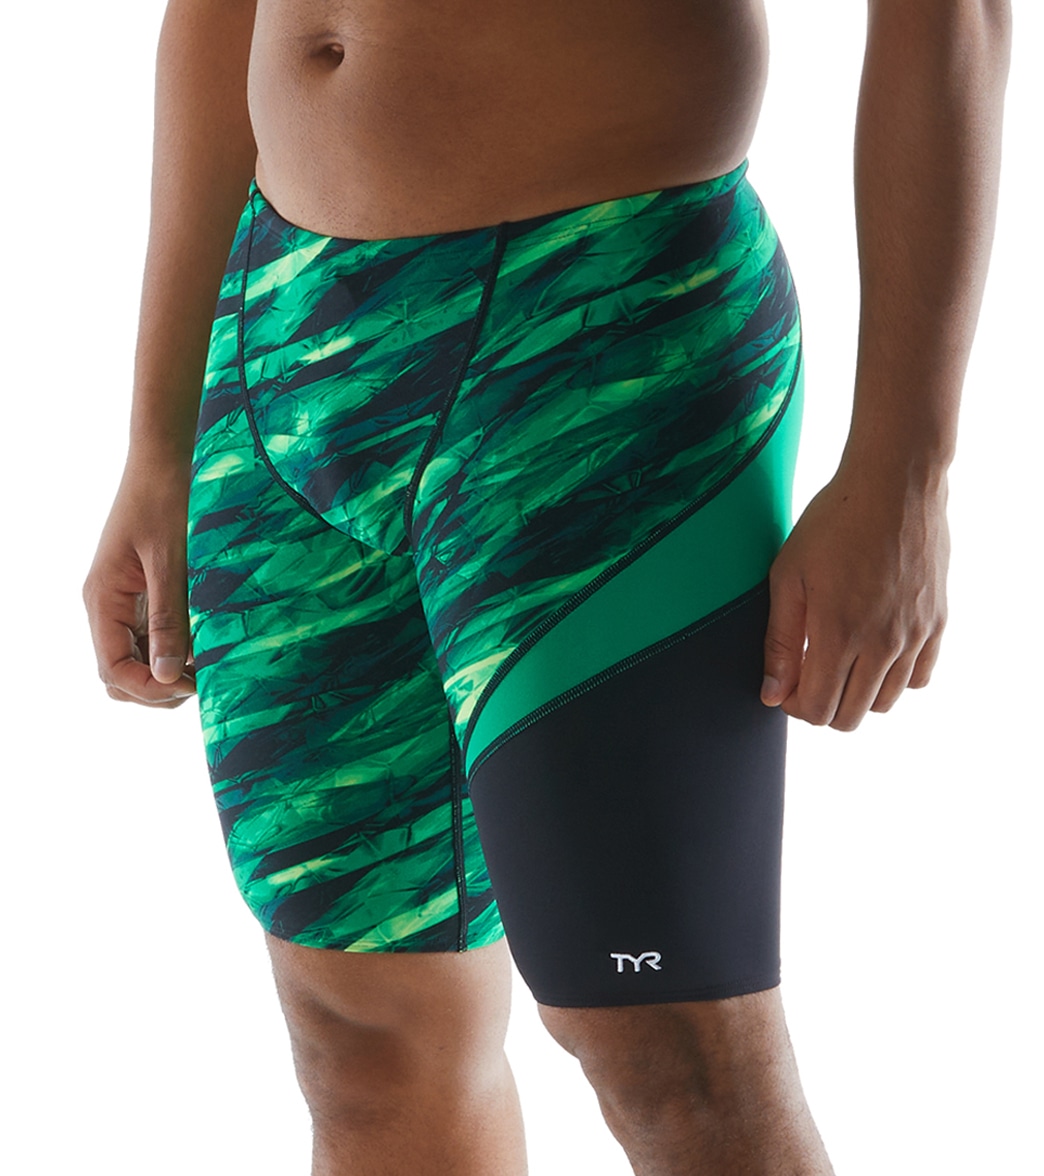 TYR Men's Vitric Jammer Swimsuit - Green 26 - Swimoutlet.com